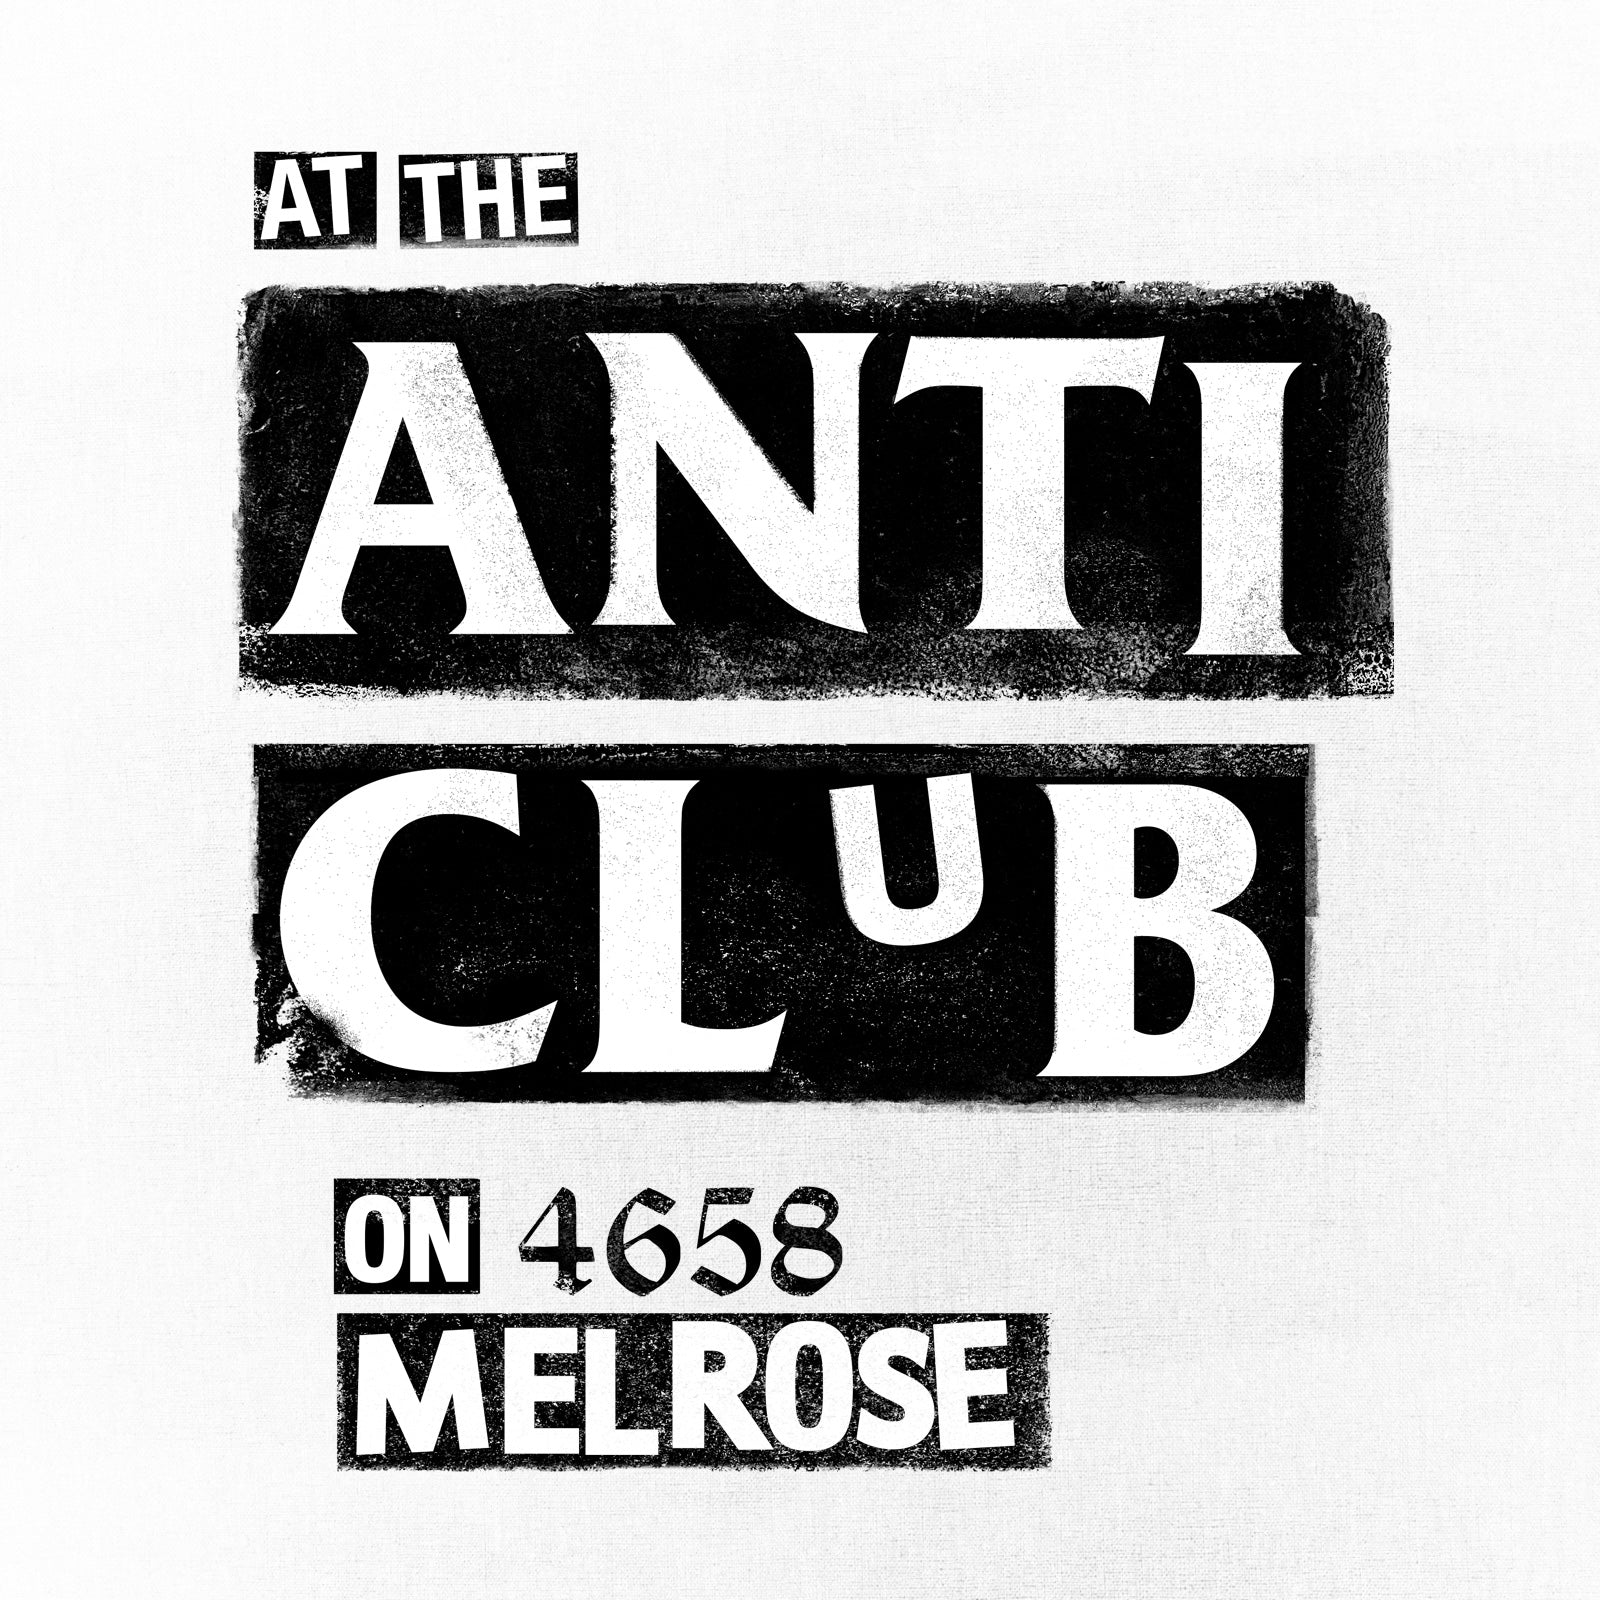 The Anti Club, Hollywood CA